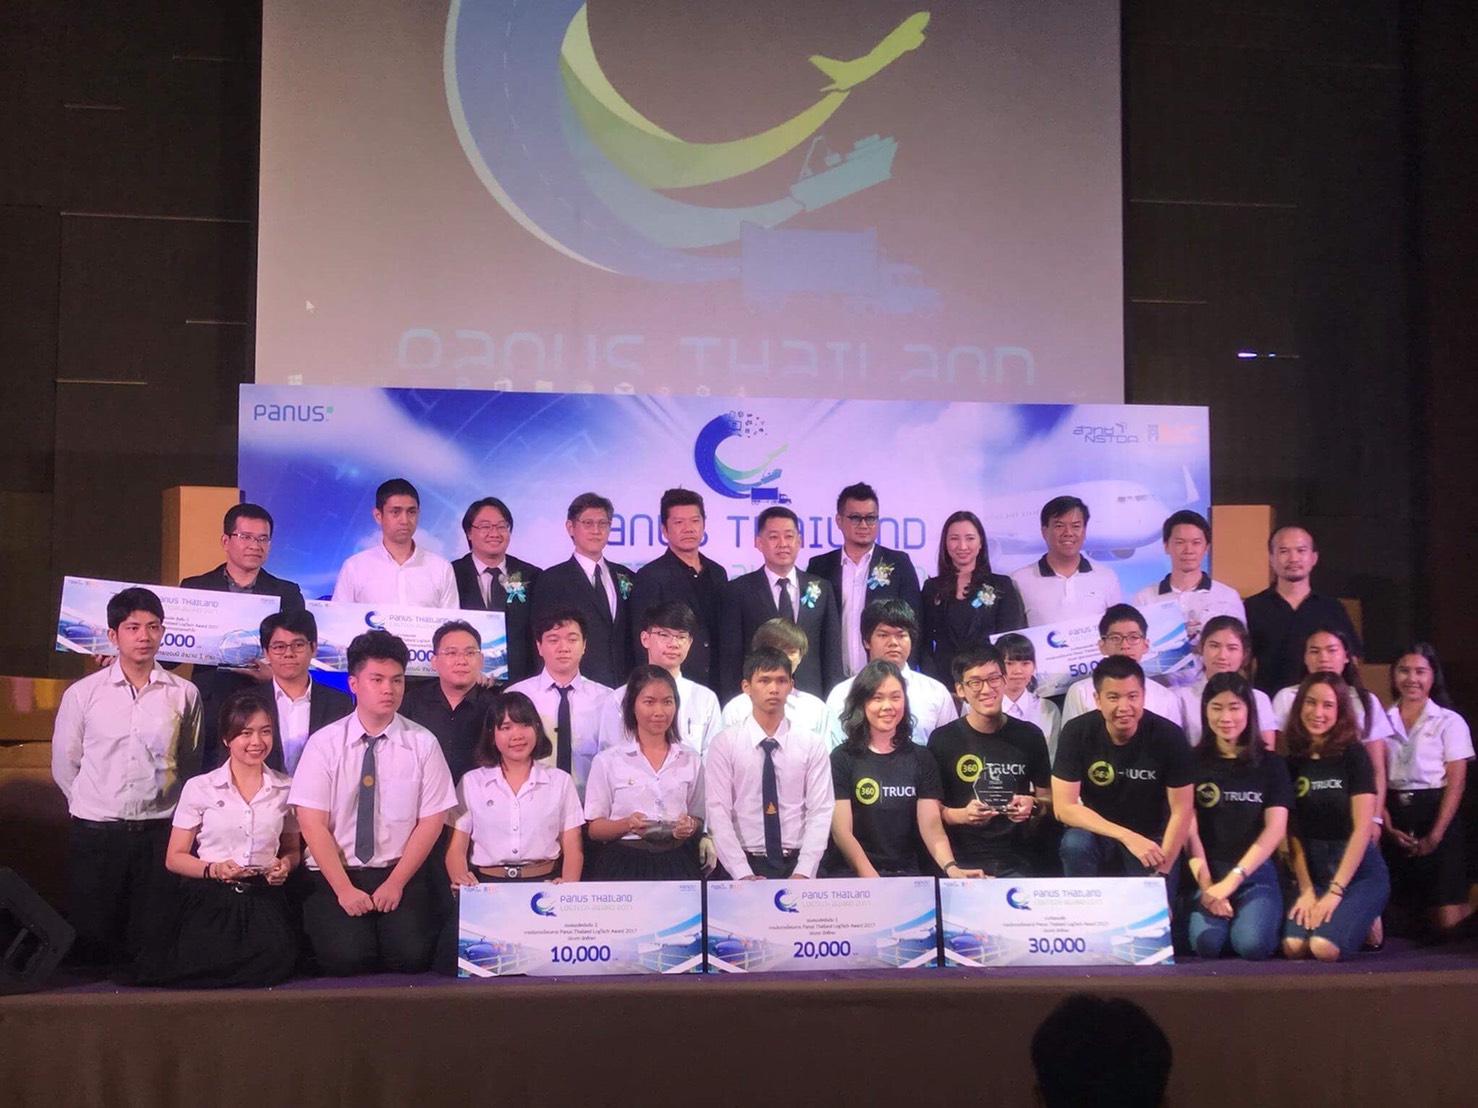 นิสิตฯ ได้รับรางวัลรองชนะเลิศอันดับ 2 การประกวดโครงการ Panus Thailand Logtech Award 2017